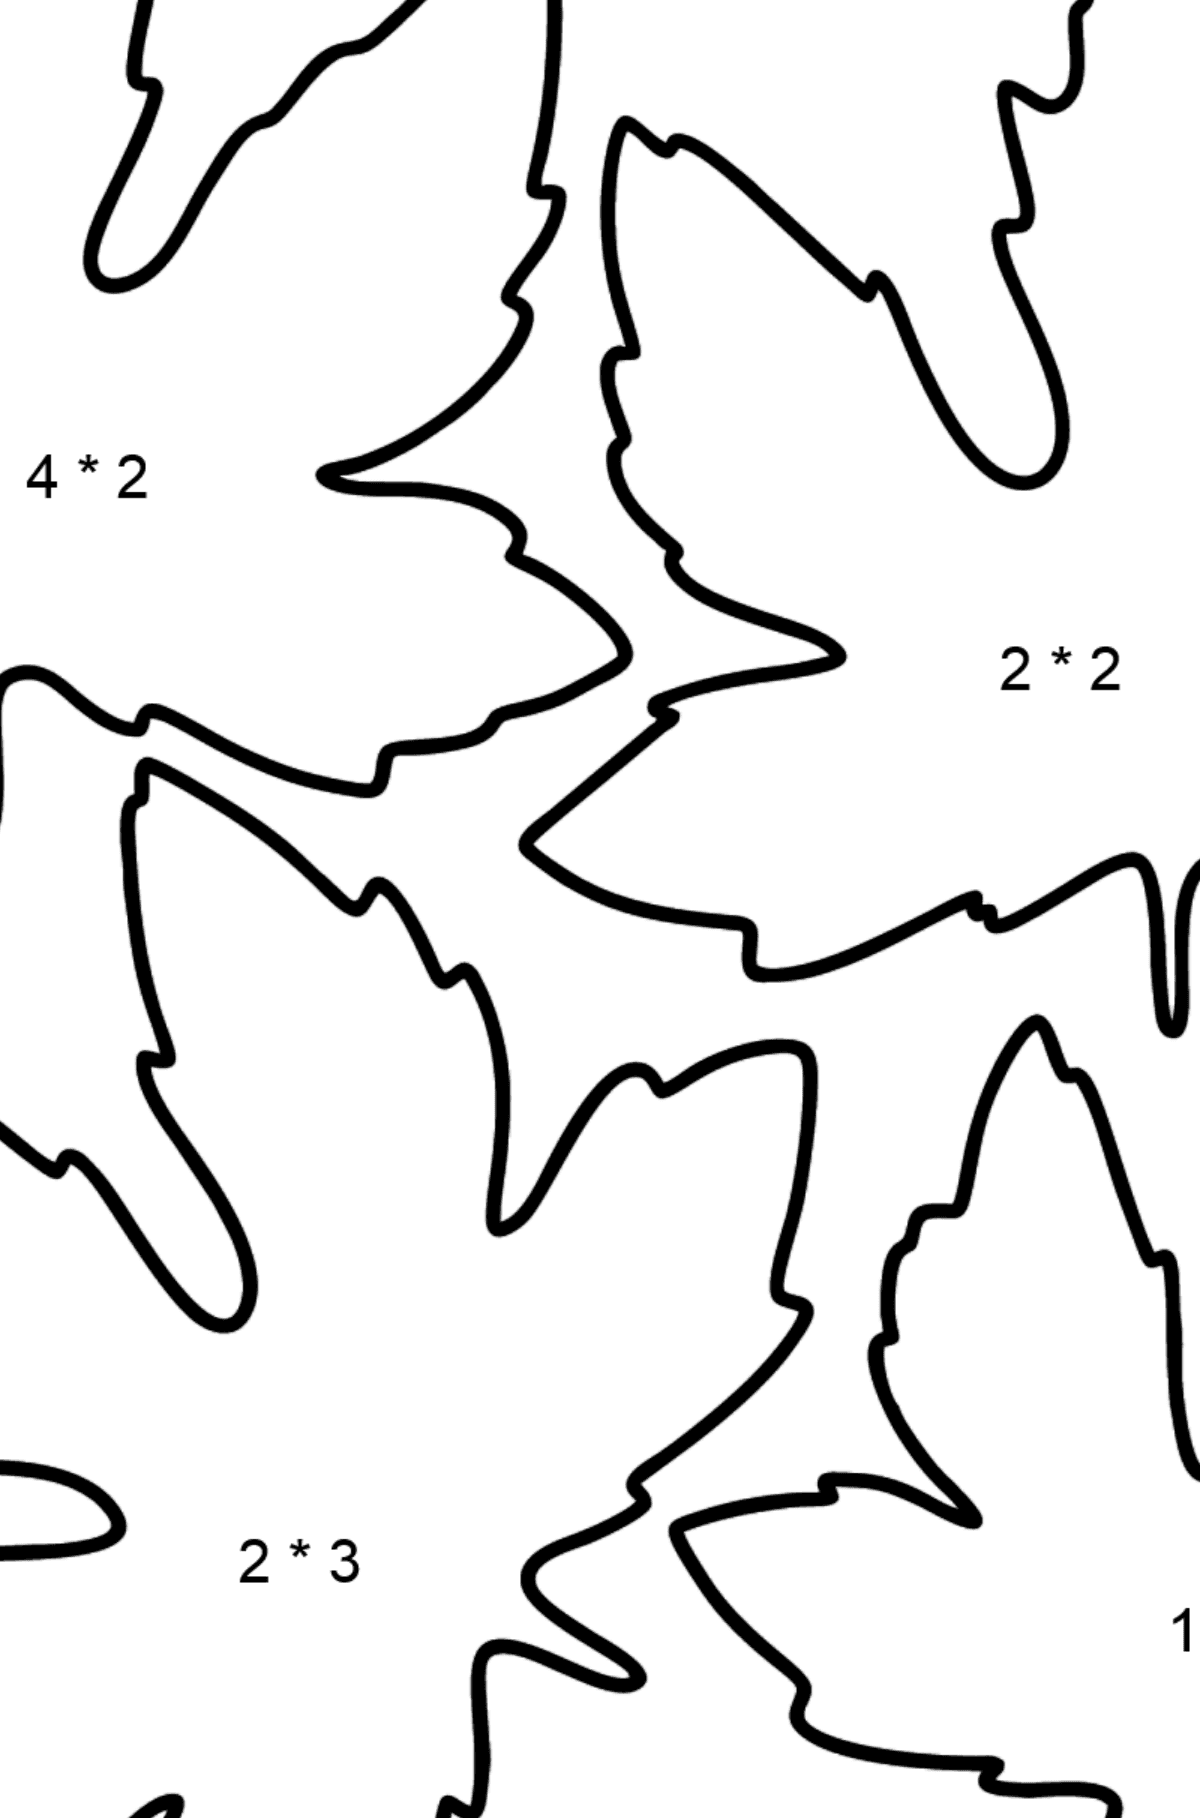 Desenho para colorir de Maple Leaves - Colorindo com Matemática - Multiplicação para Crianças